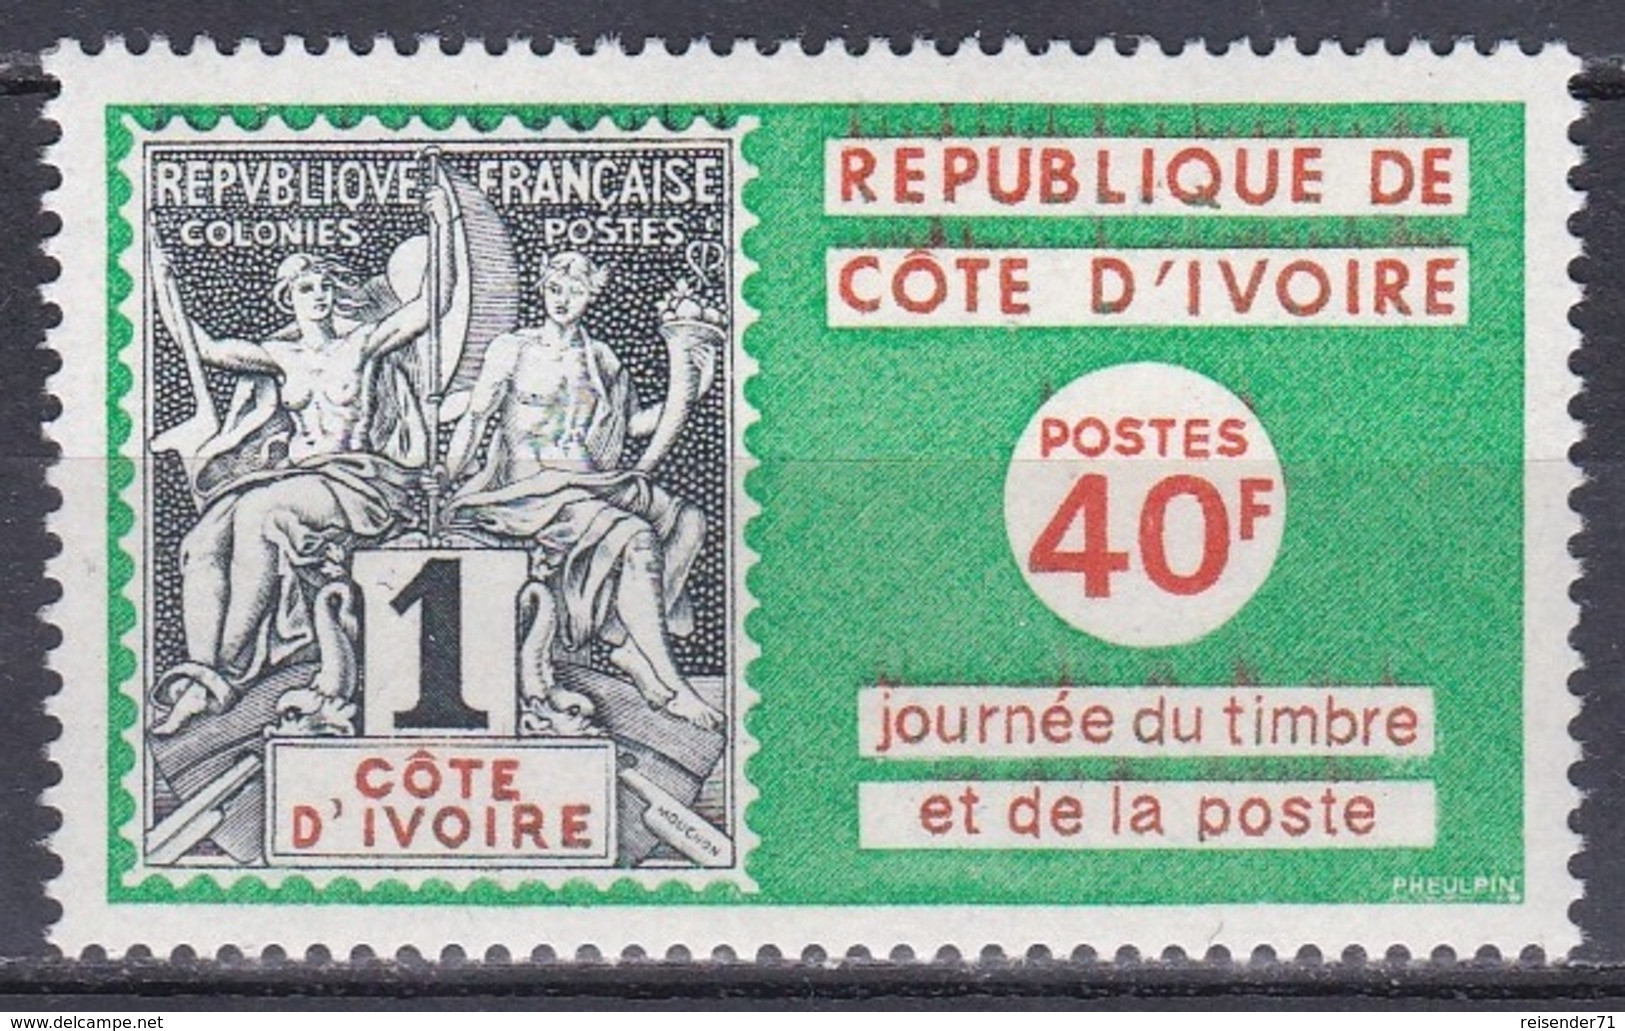 Elfenbeinküste Ivory Coast Cote D'Ivoire 1973 Philatelie Philately Tag Der Briefmarke Postwesen Allegorien, Mi. 438 ** - Côte D'Ivoire (1960-...)